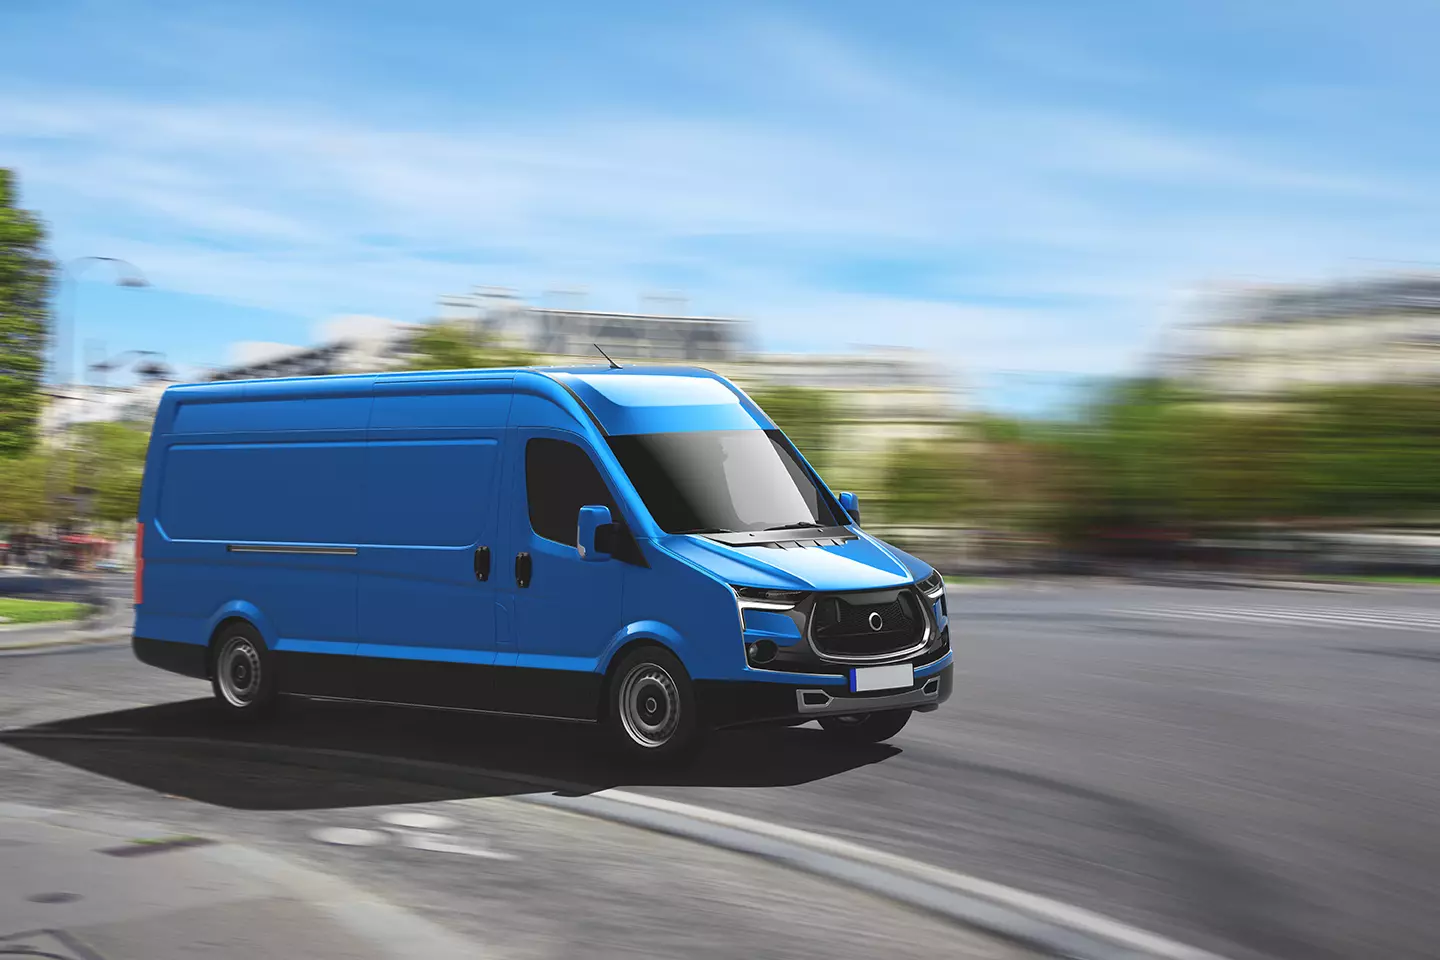 Camioneta azul rodando sobre carretera representando que Apple y Volkswagen se aliarían para crear vans autónomas